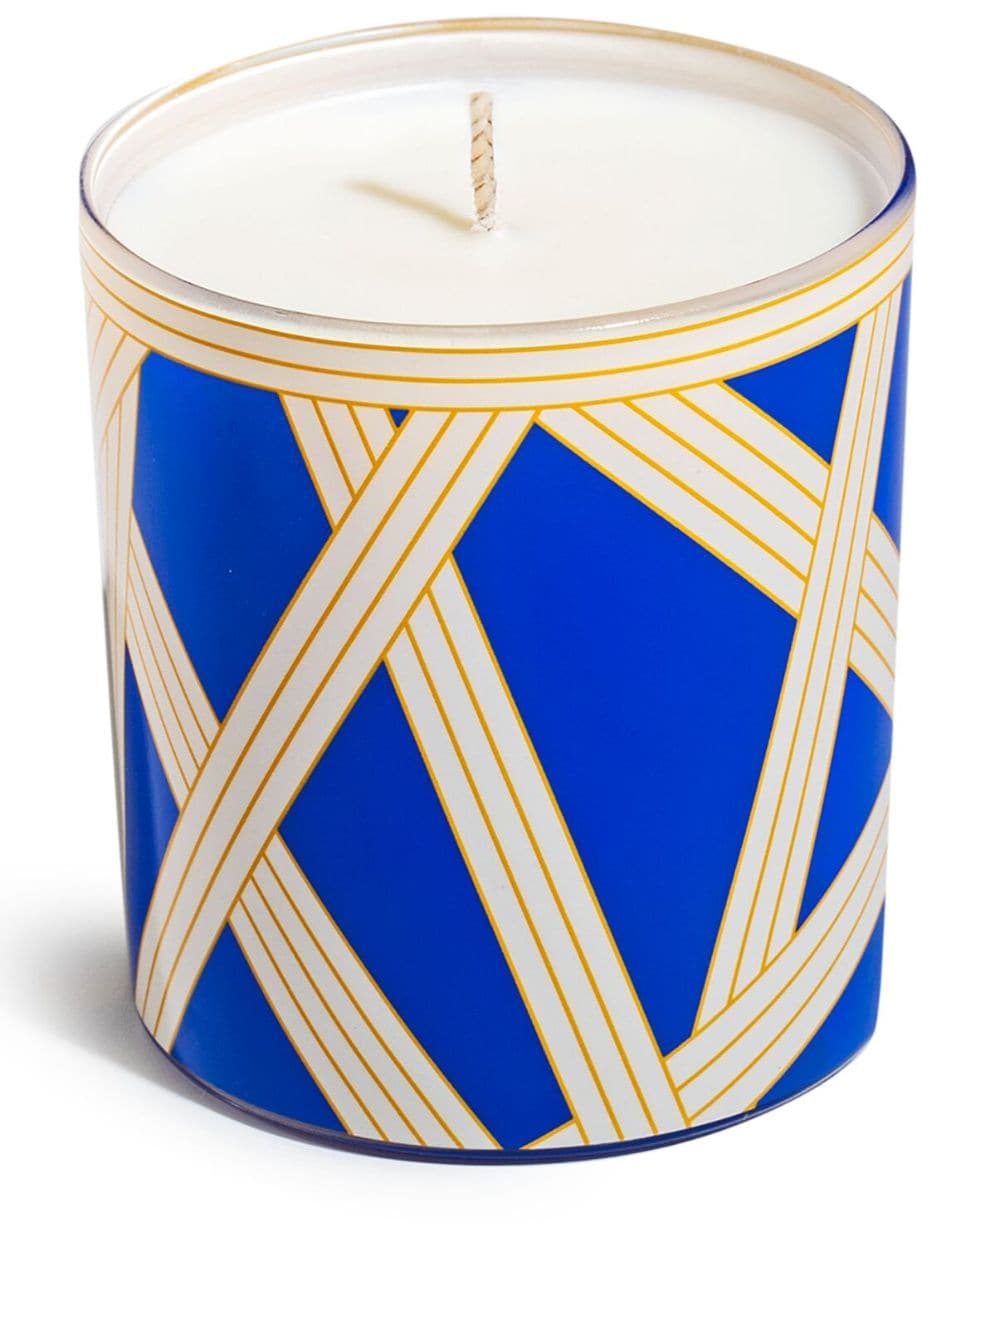 Missoni Home Nastri scented candle (220g) - Blue von Missoni Home